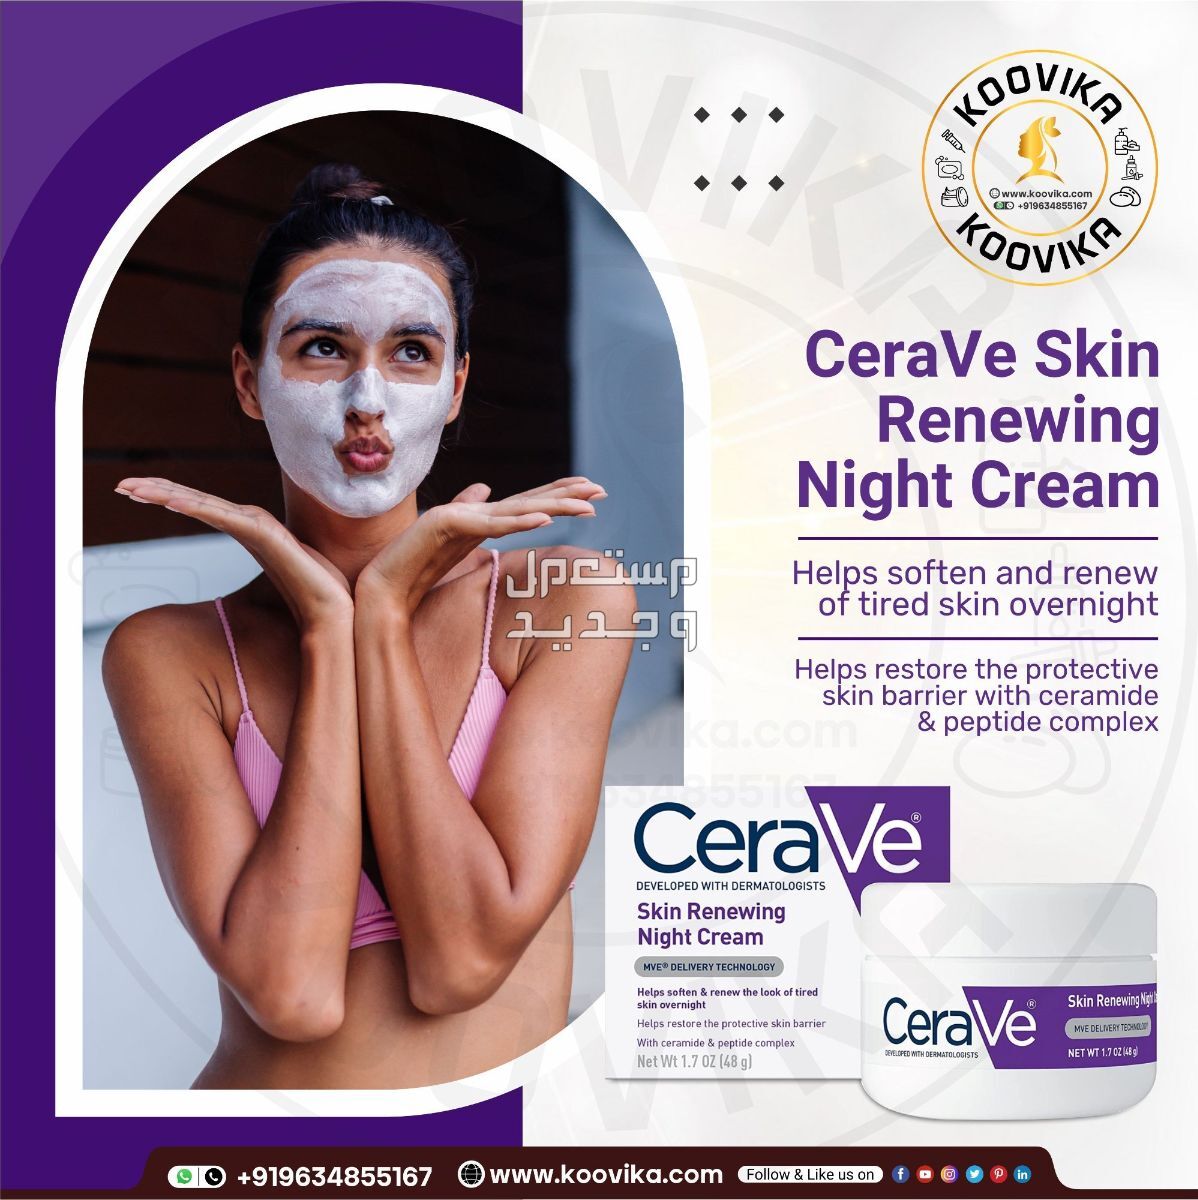 أفضل كريم ليلي للعناية بالبشرة لعام 2023 في الإمارات العربية المتحدة شكل كريم ليلي من CeraVe Skin Renewing Night Cream على البشرة